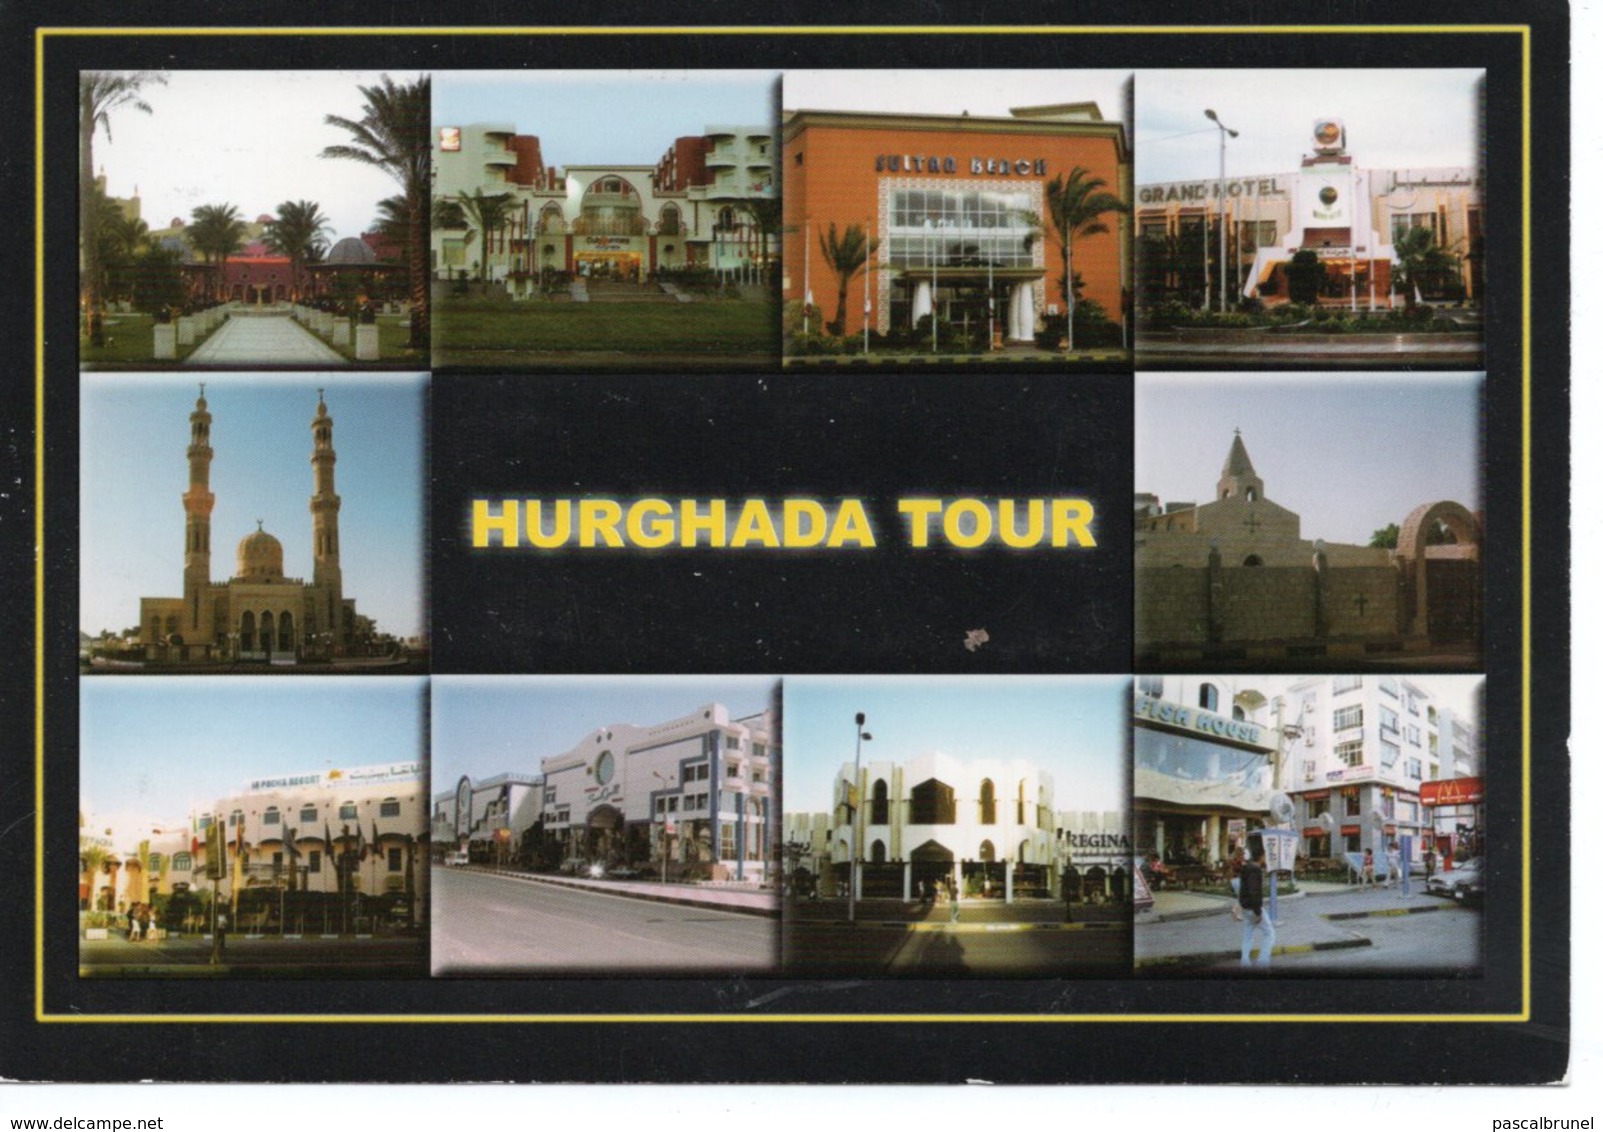 HURGHADA TOUR - Hurgada